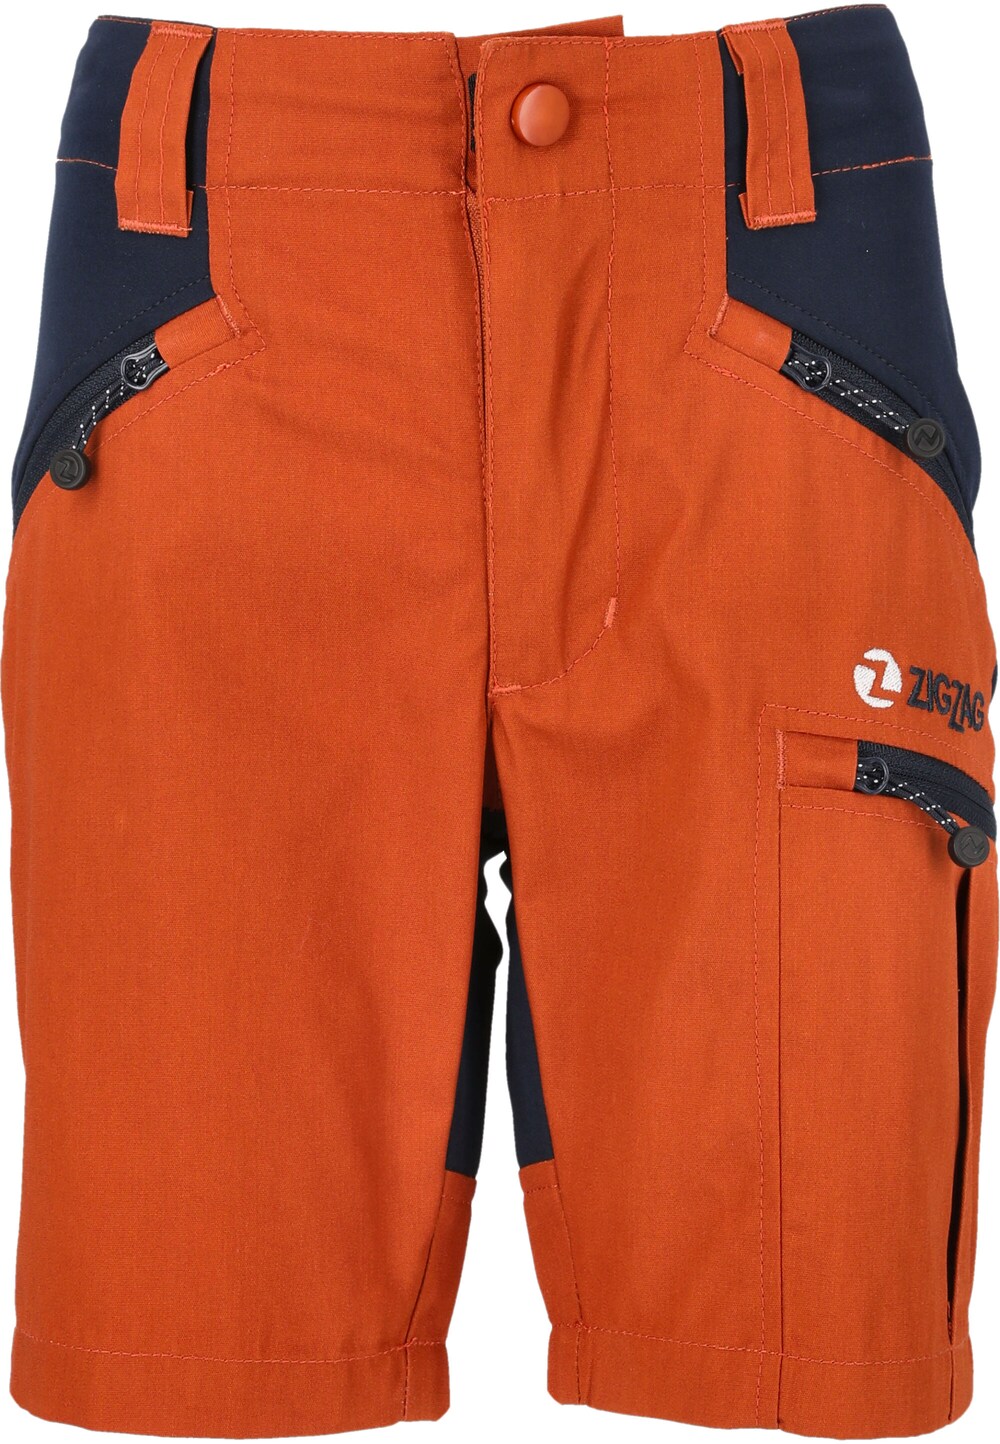 Обычные тренировочные брюки ZigZag Bono, апельсин